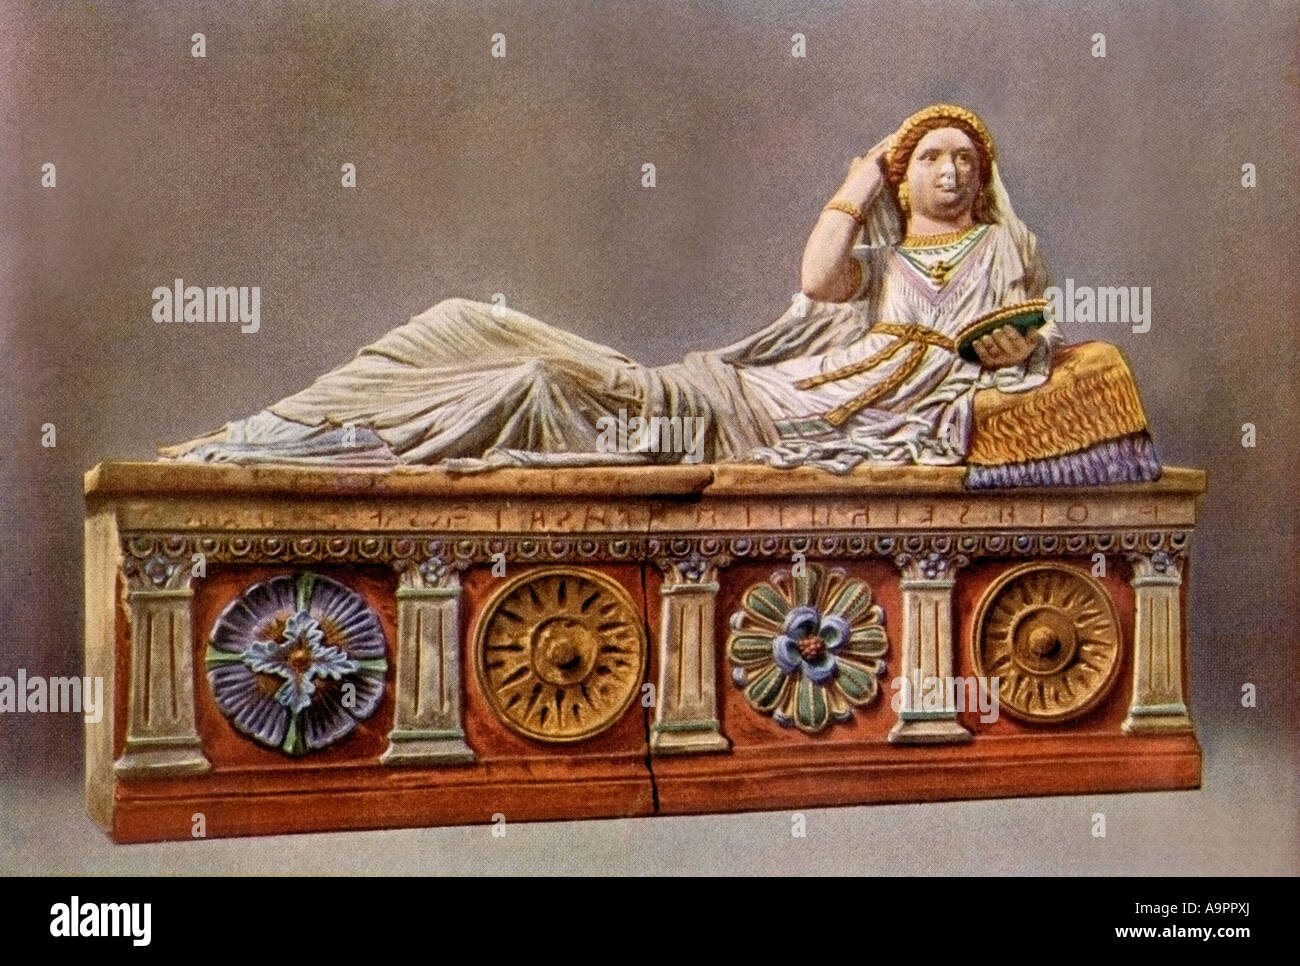 Sarcófago etrusco con una sola figura. Semitono de color de una fotografía Foto de stock